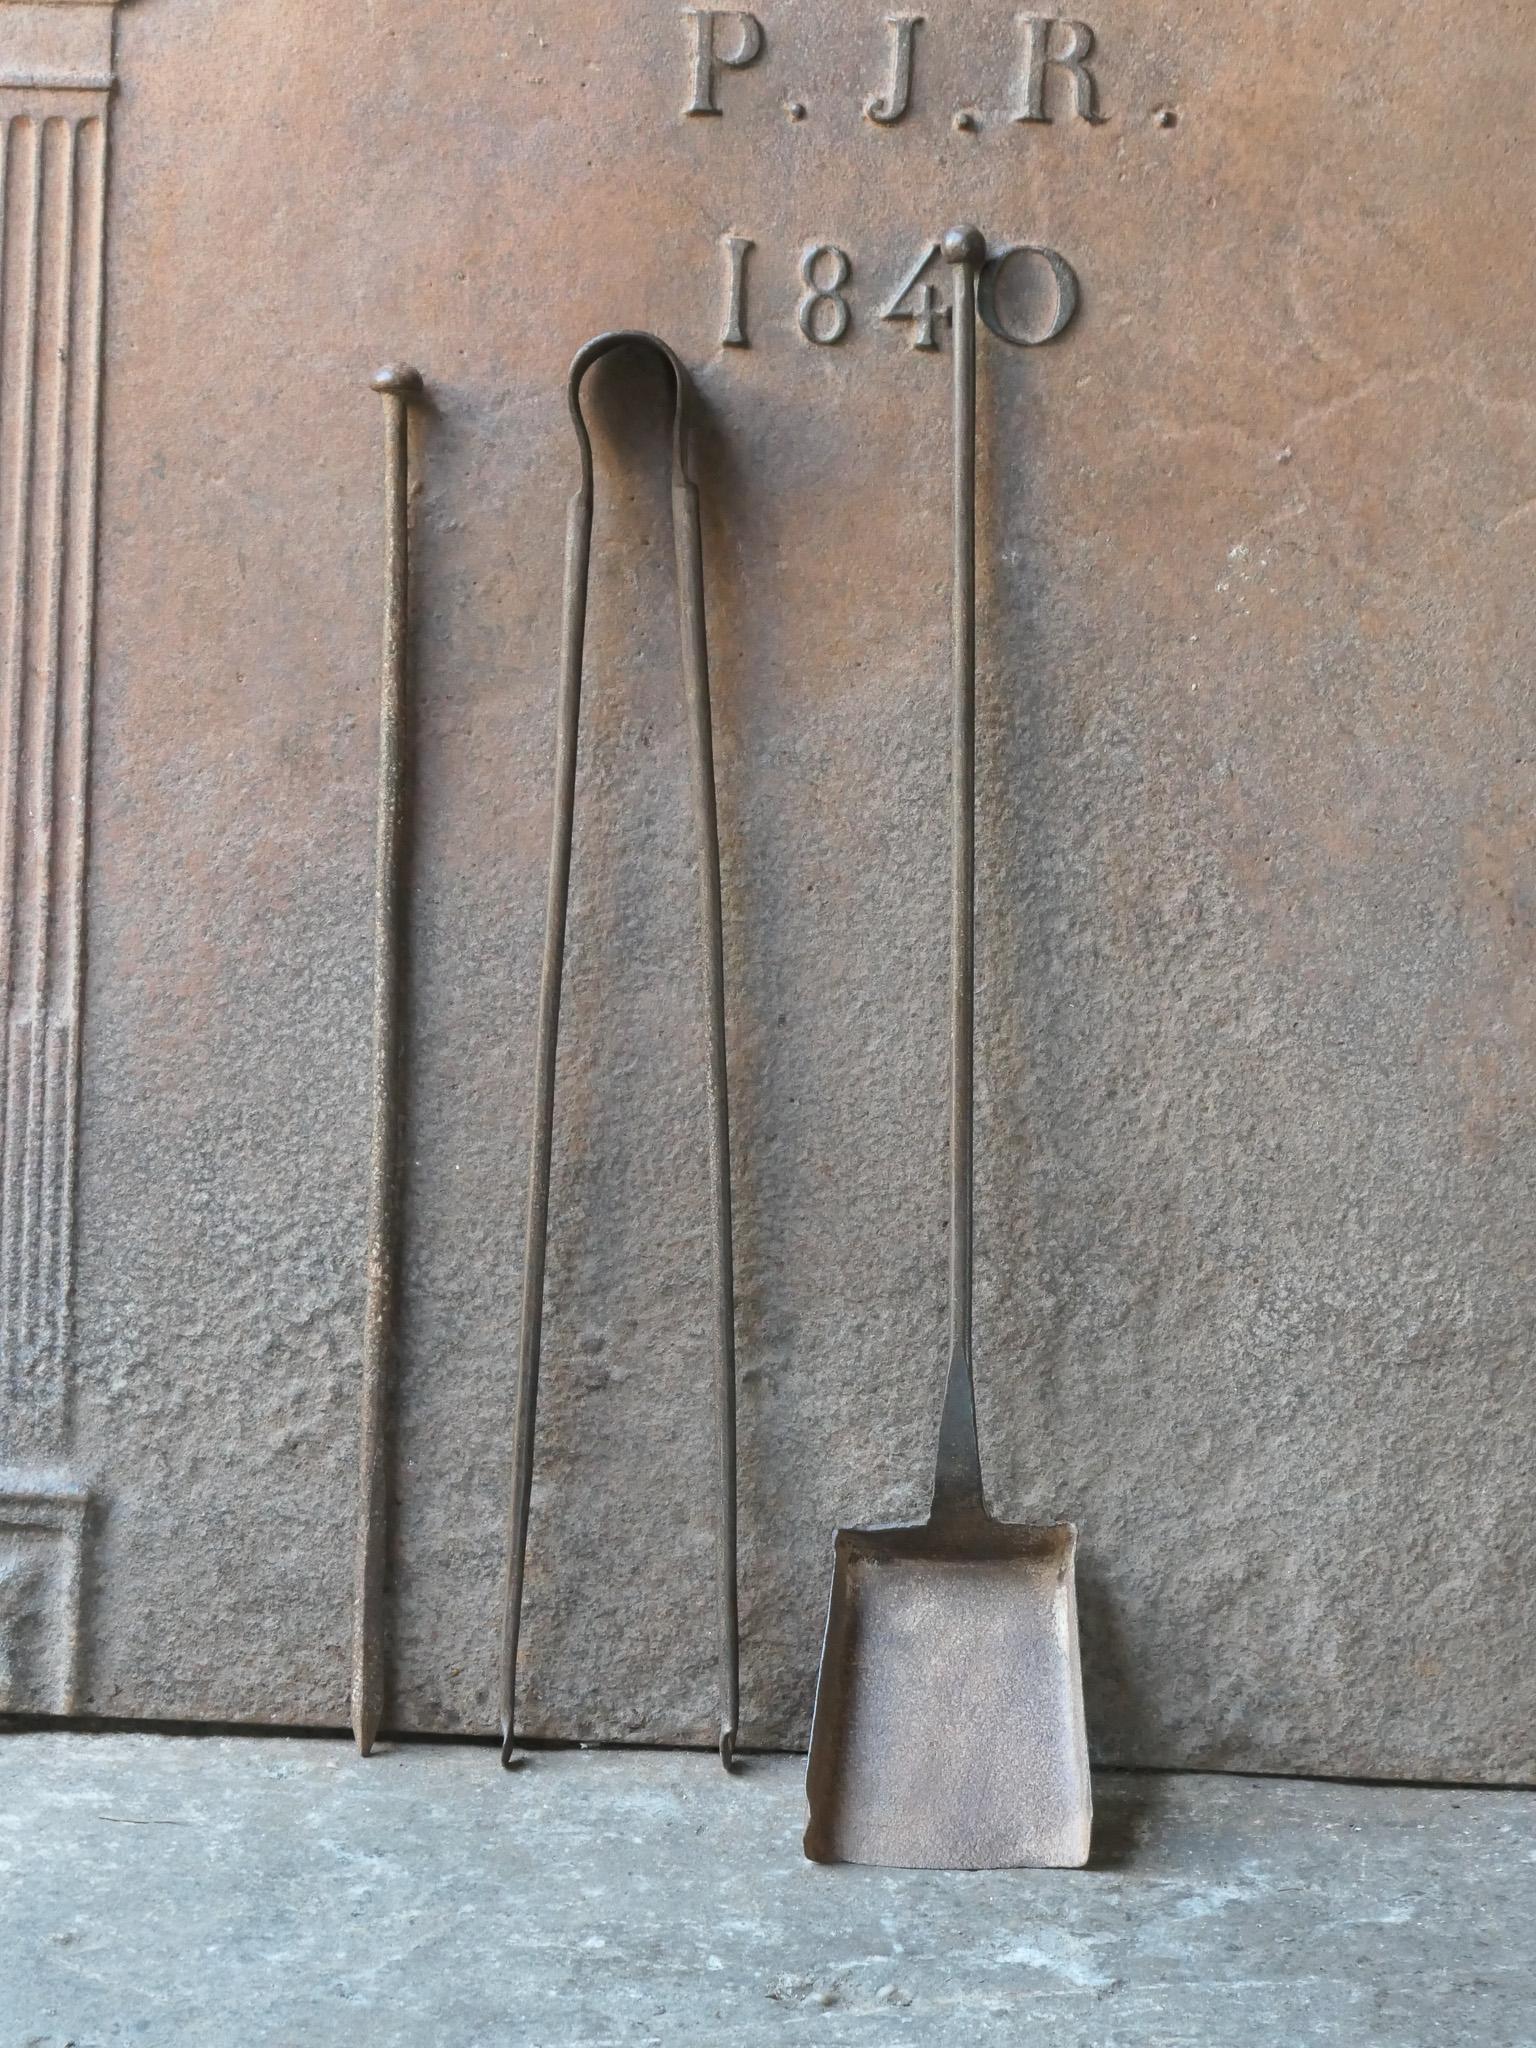 Ensemble d'outils de cheminée rustique français du 18e-19e siècle. L'ensemble d'outils comprend une pince à cheminée, une pelle et un tisonnier. Les outils sont en fer forgé. L'ensemble est en bon état et apte à être utilisé dans la cheminée.